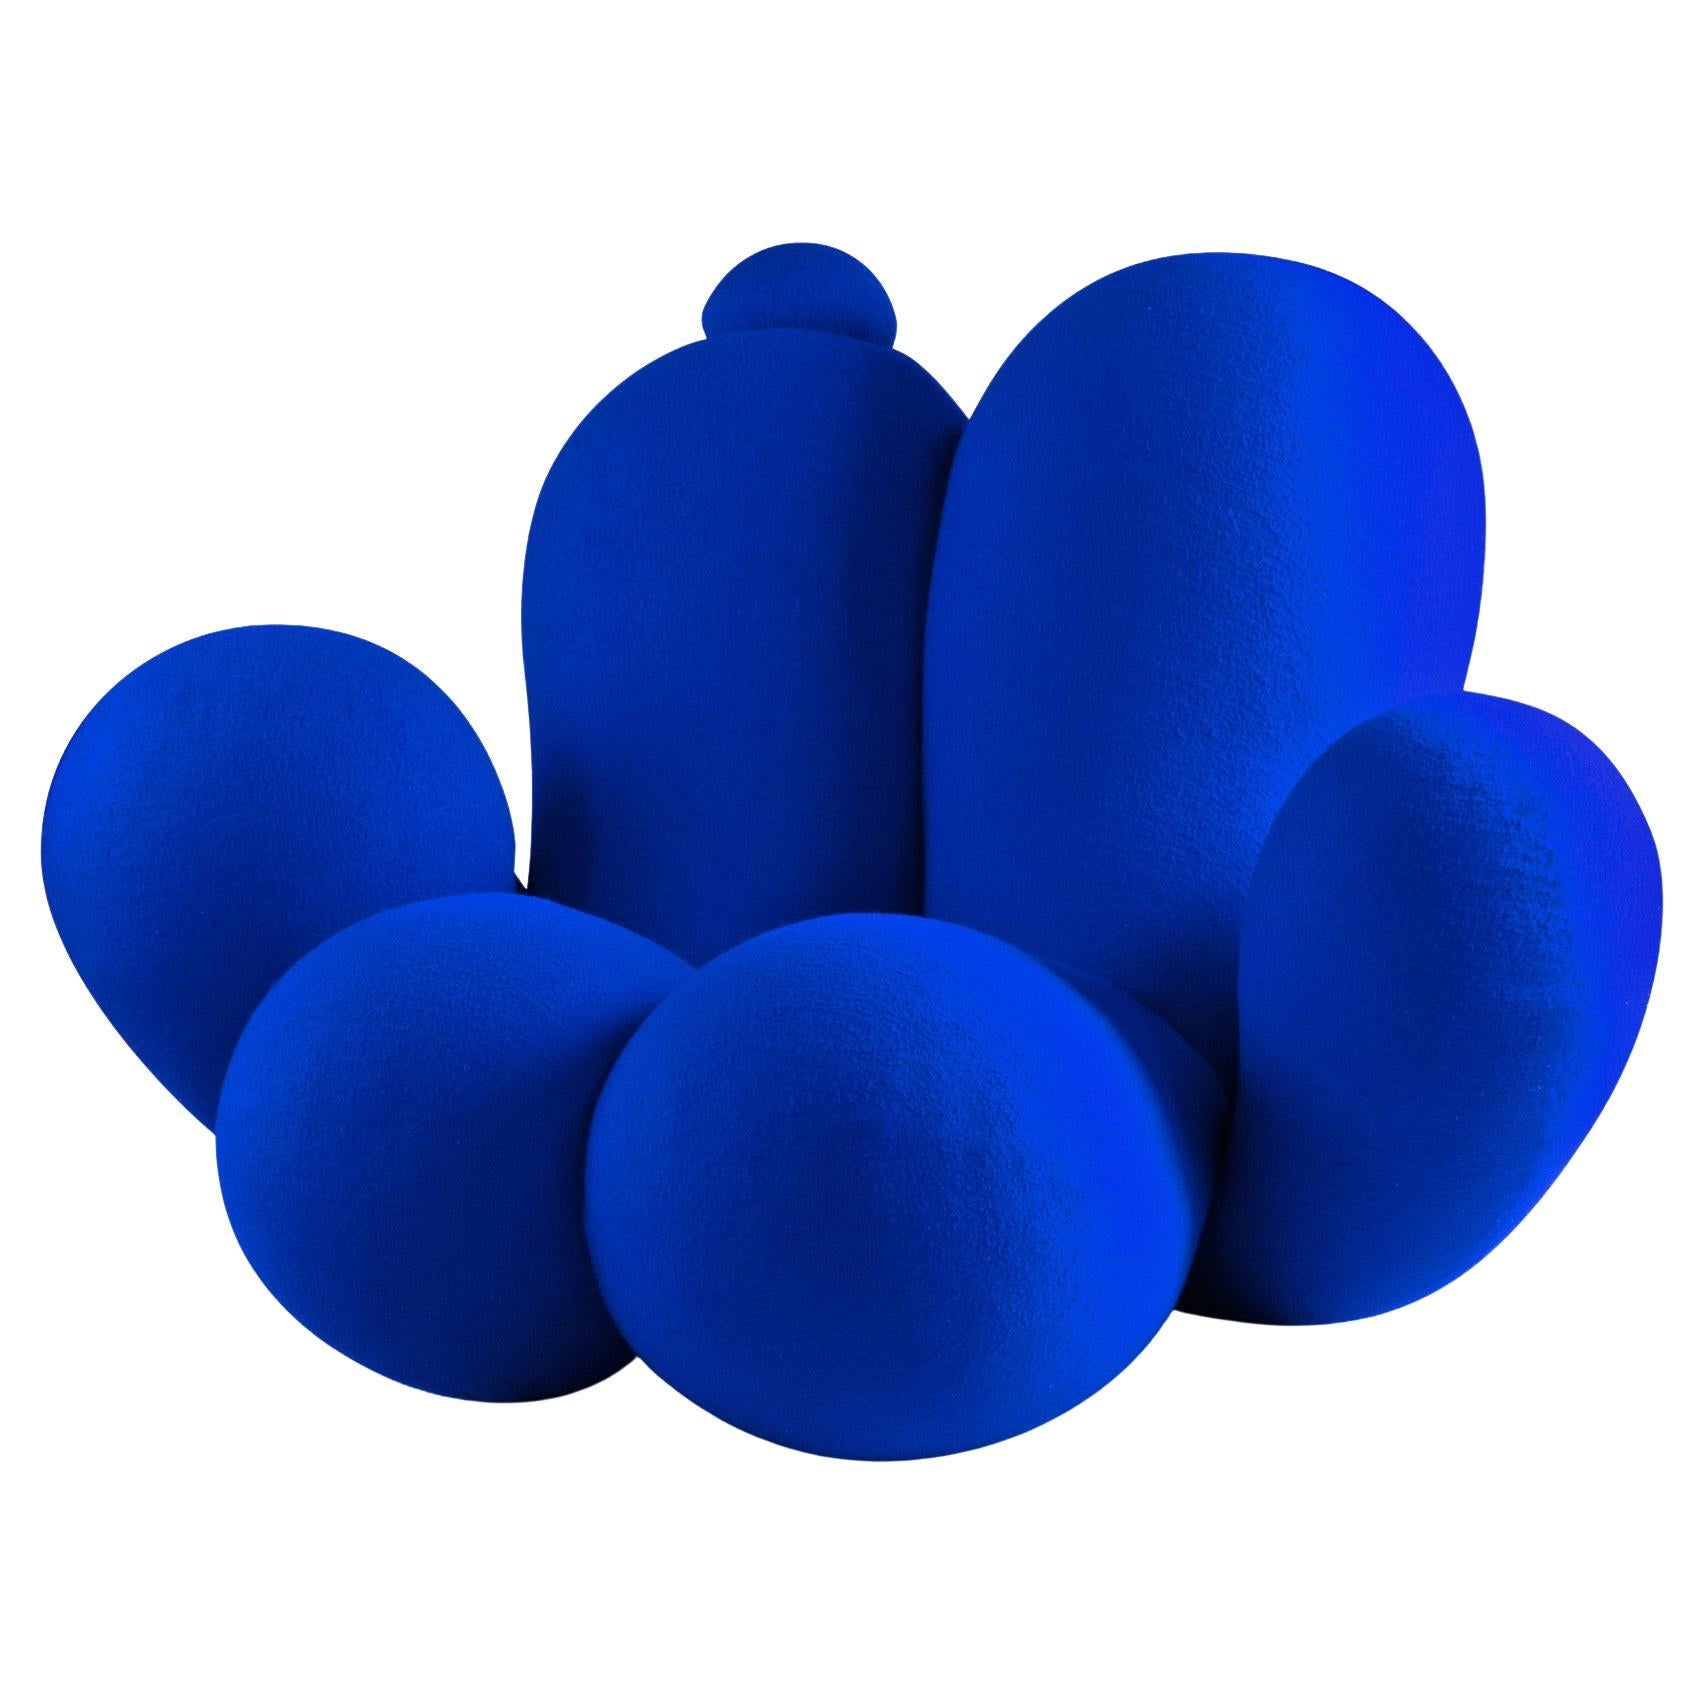 Fauteuil Big Girl de Lara Bohinc, velours bleu, forme sculpturale organique